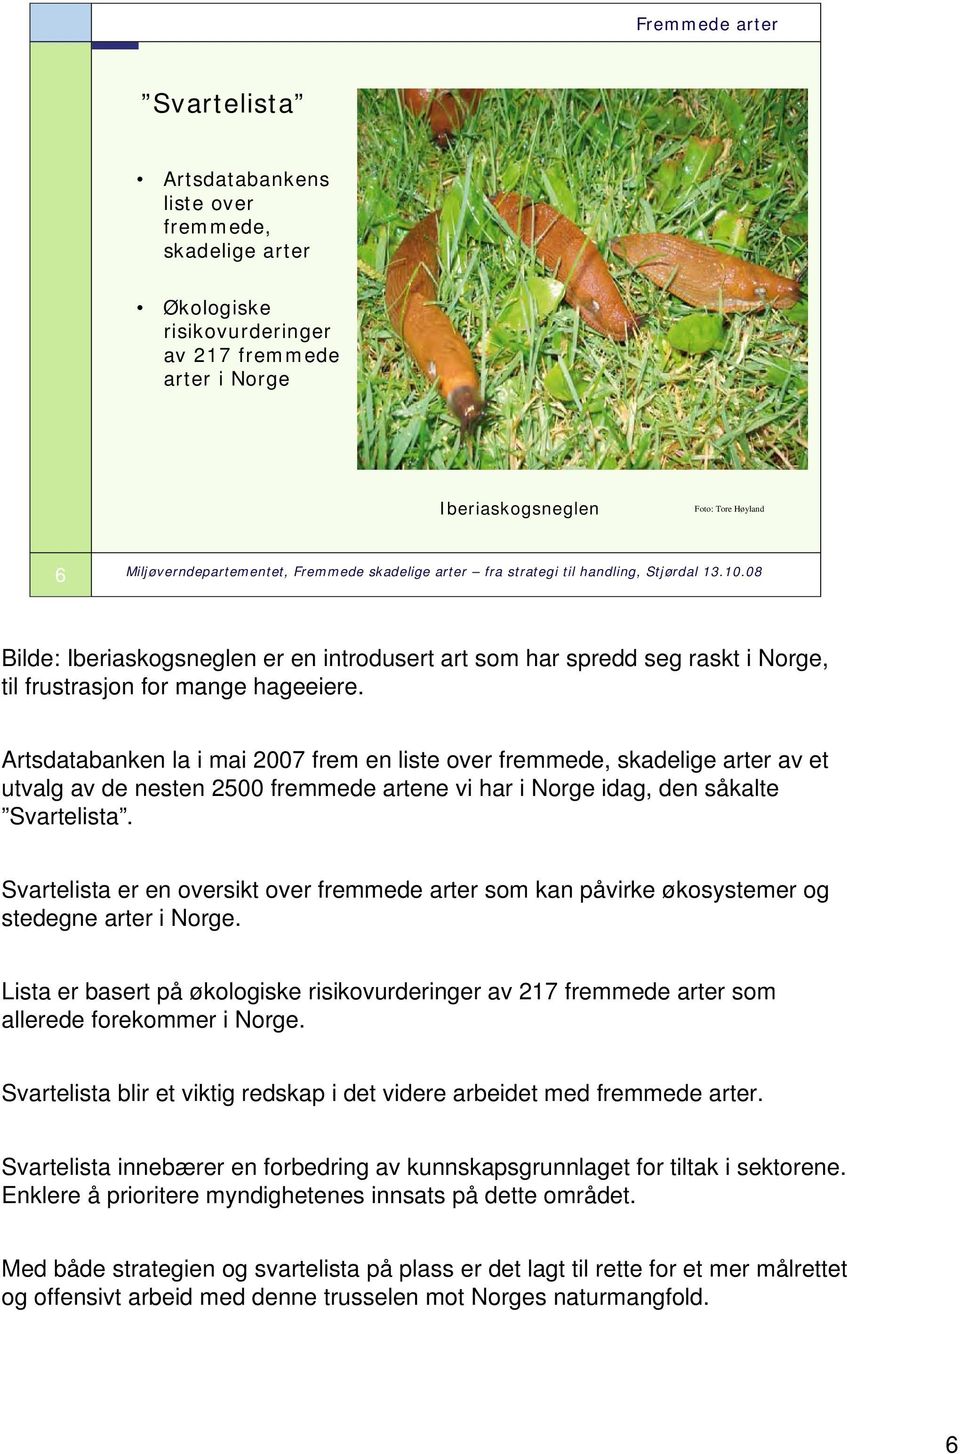 Artsdatabanken la i mai 2007 frem en liste over fremmede, skadelige arter av et utvalg av de nesten 2500 fremmede artene vi har i Norge idag, den såkalte Svartelista.